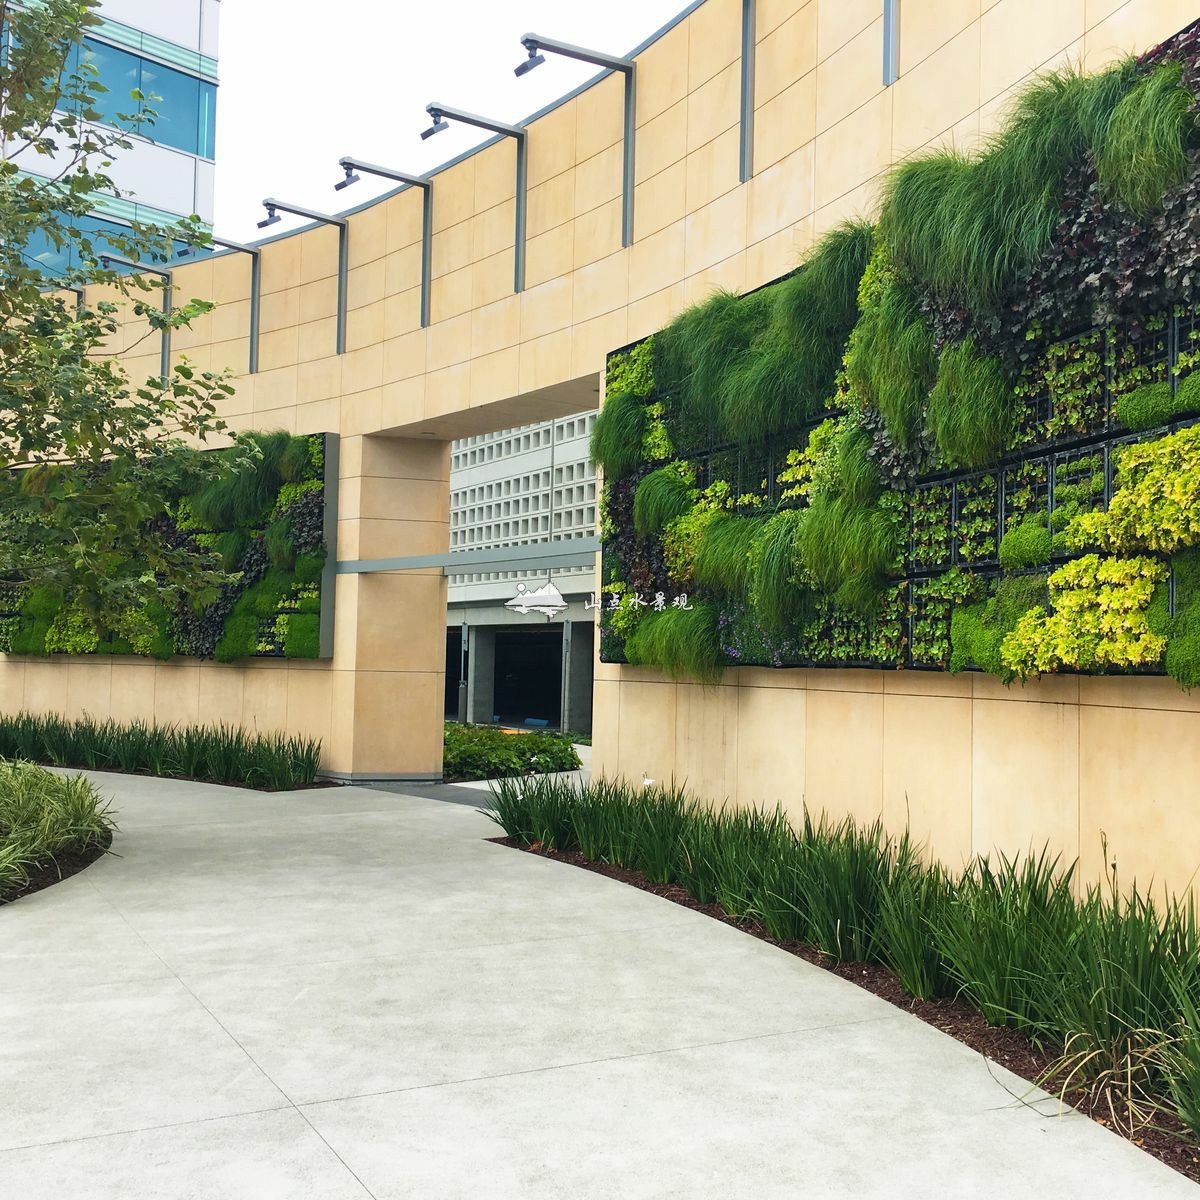 学校入口围墙垂直绿化植物墙景观